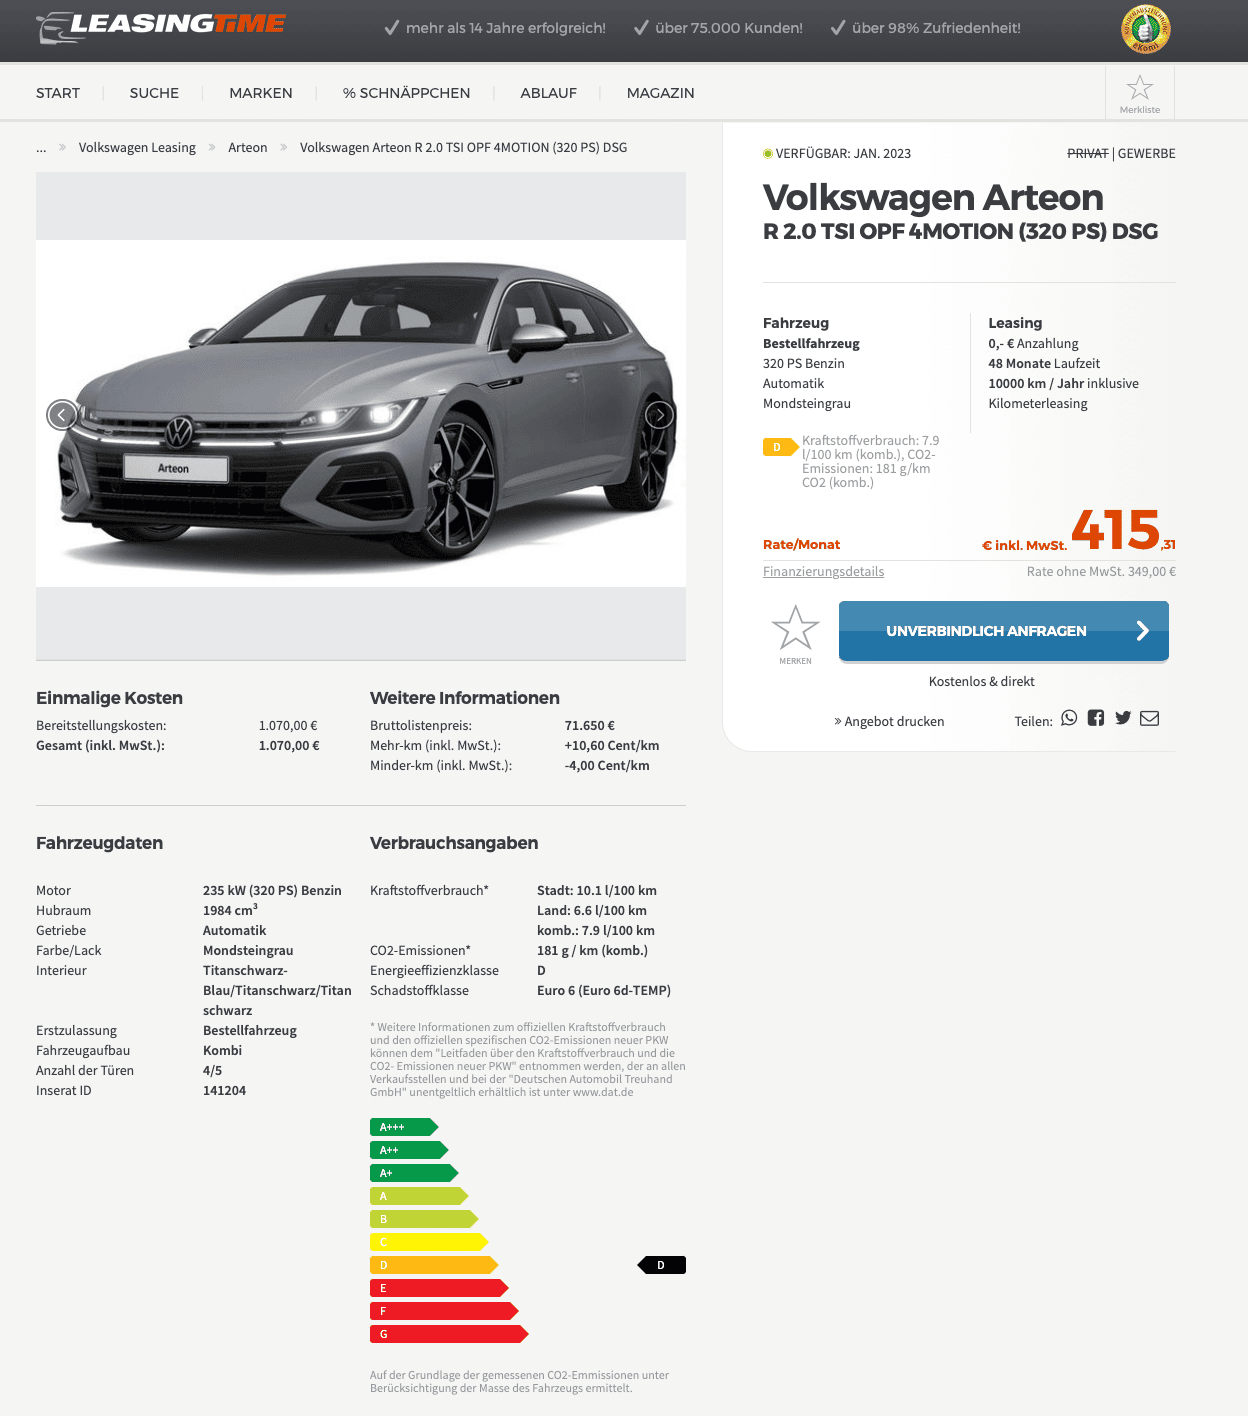 VW Arteon Shooting Brake mit Firmenleasing ab mtl. 349 €